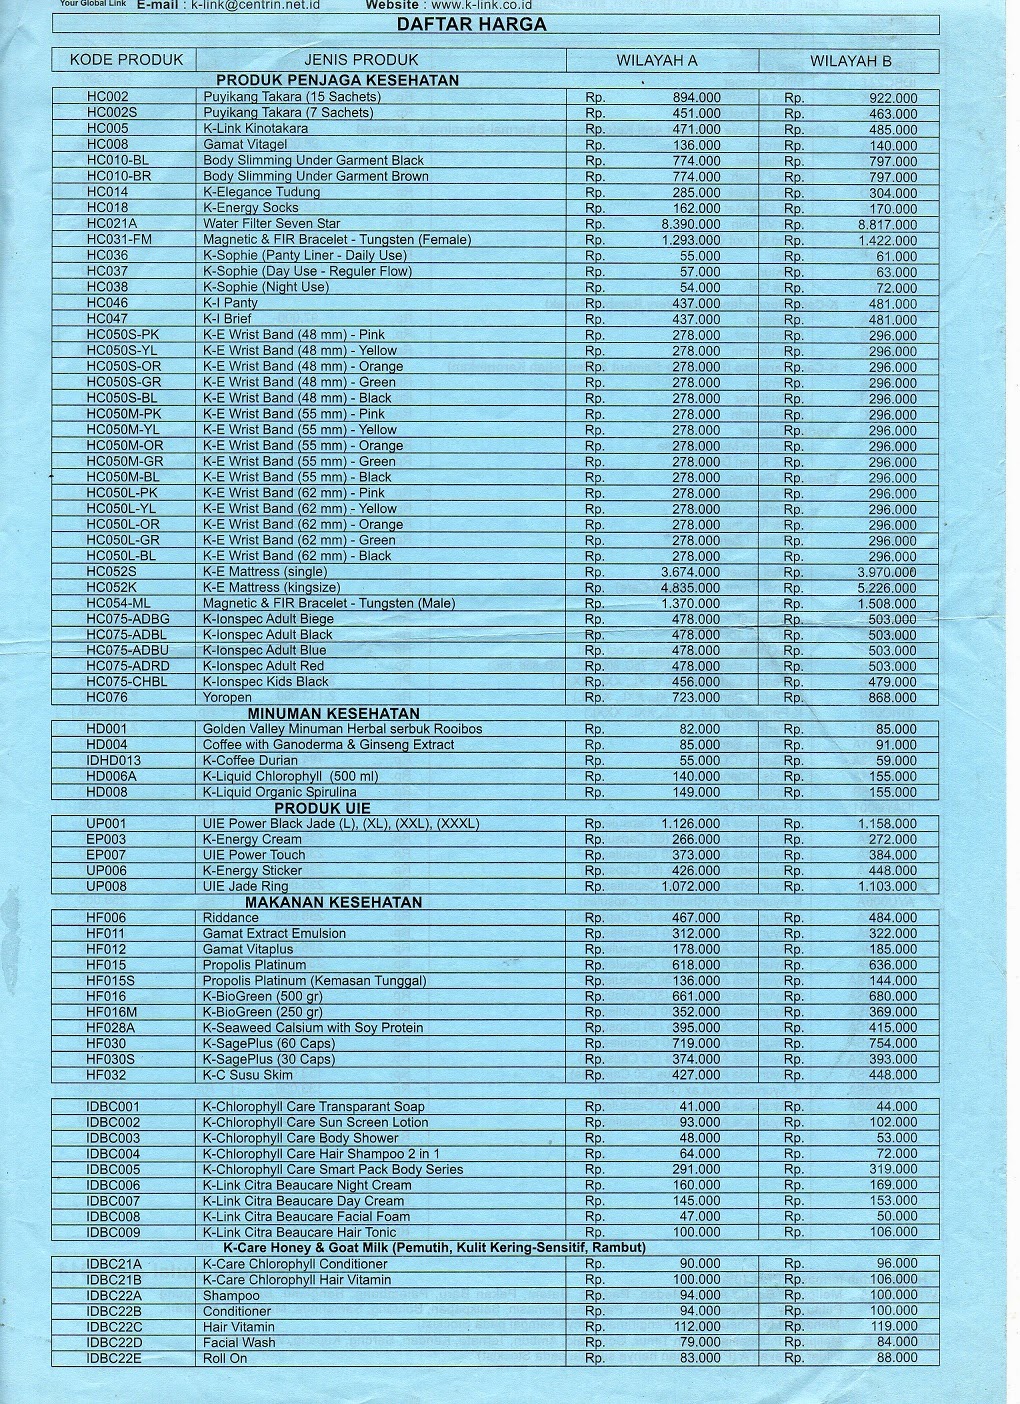 Daftar harga terbaru 2015 situs harga barang dan jasa 